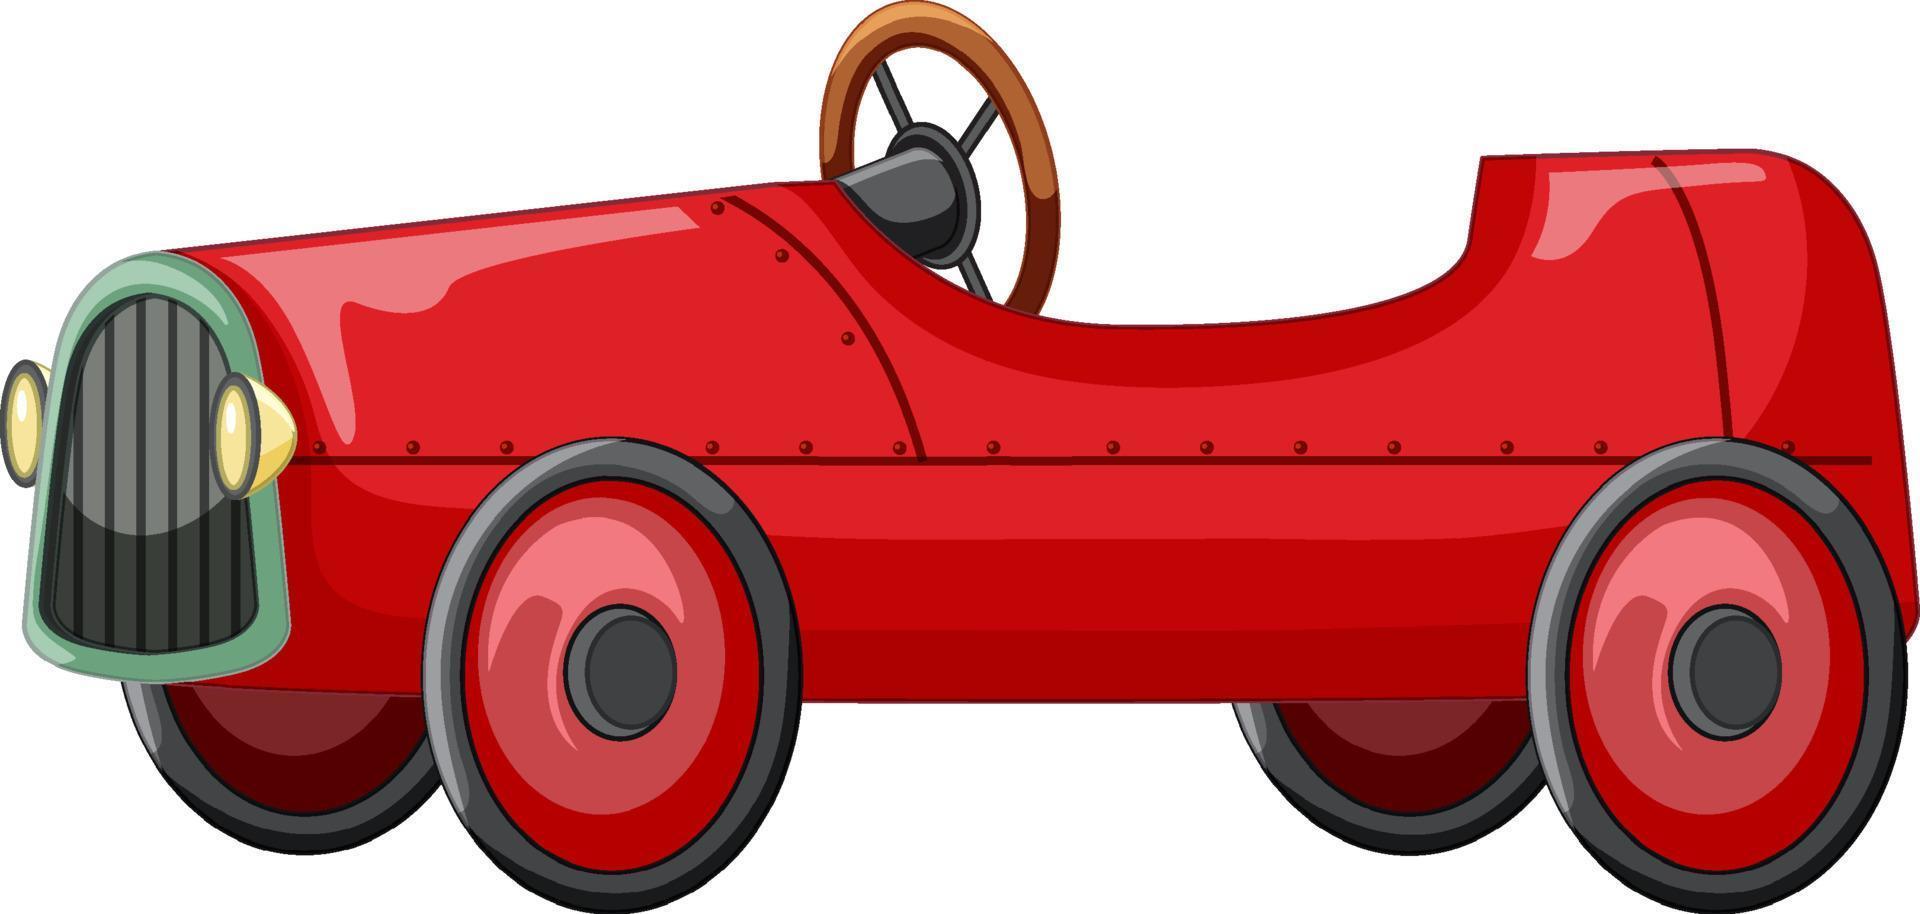 Jouet de voiture rouge vintage sur fond blanc vecteur